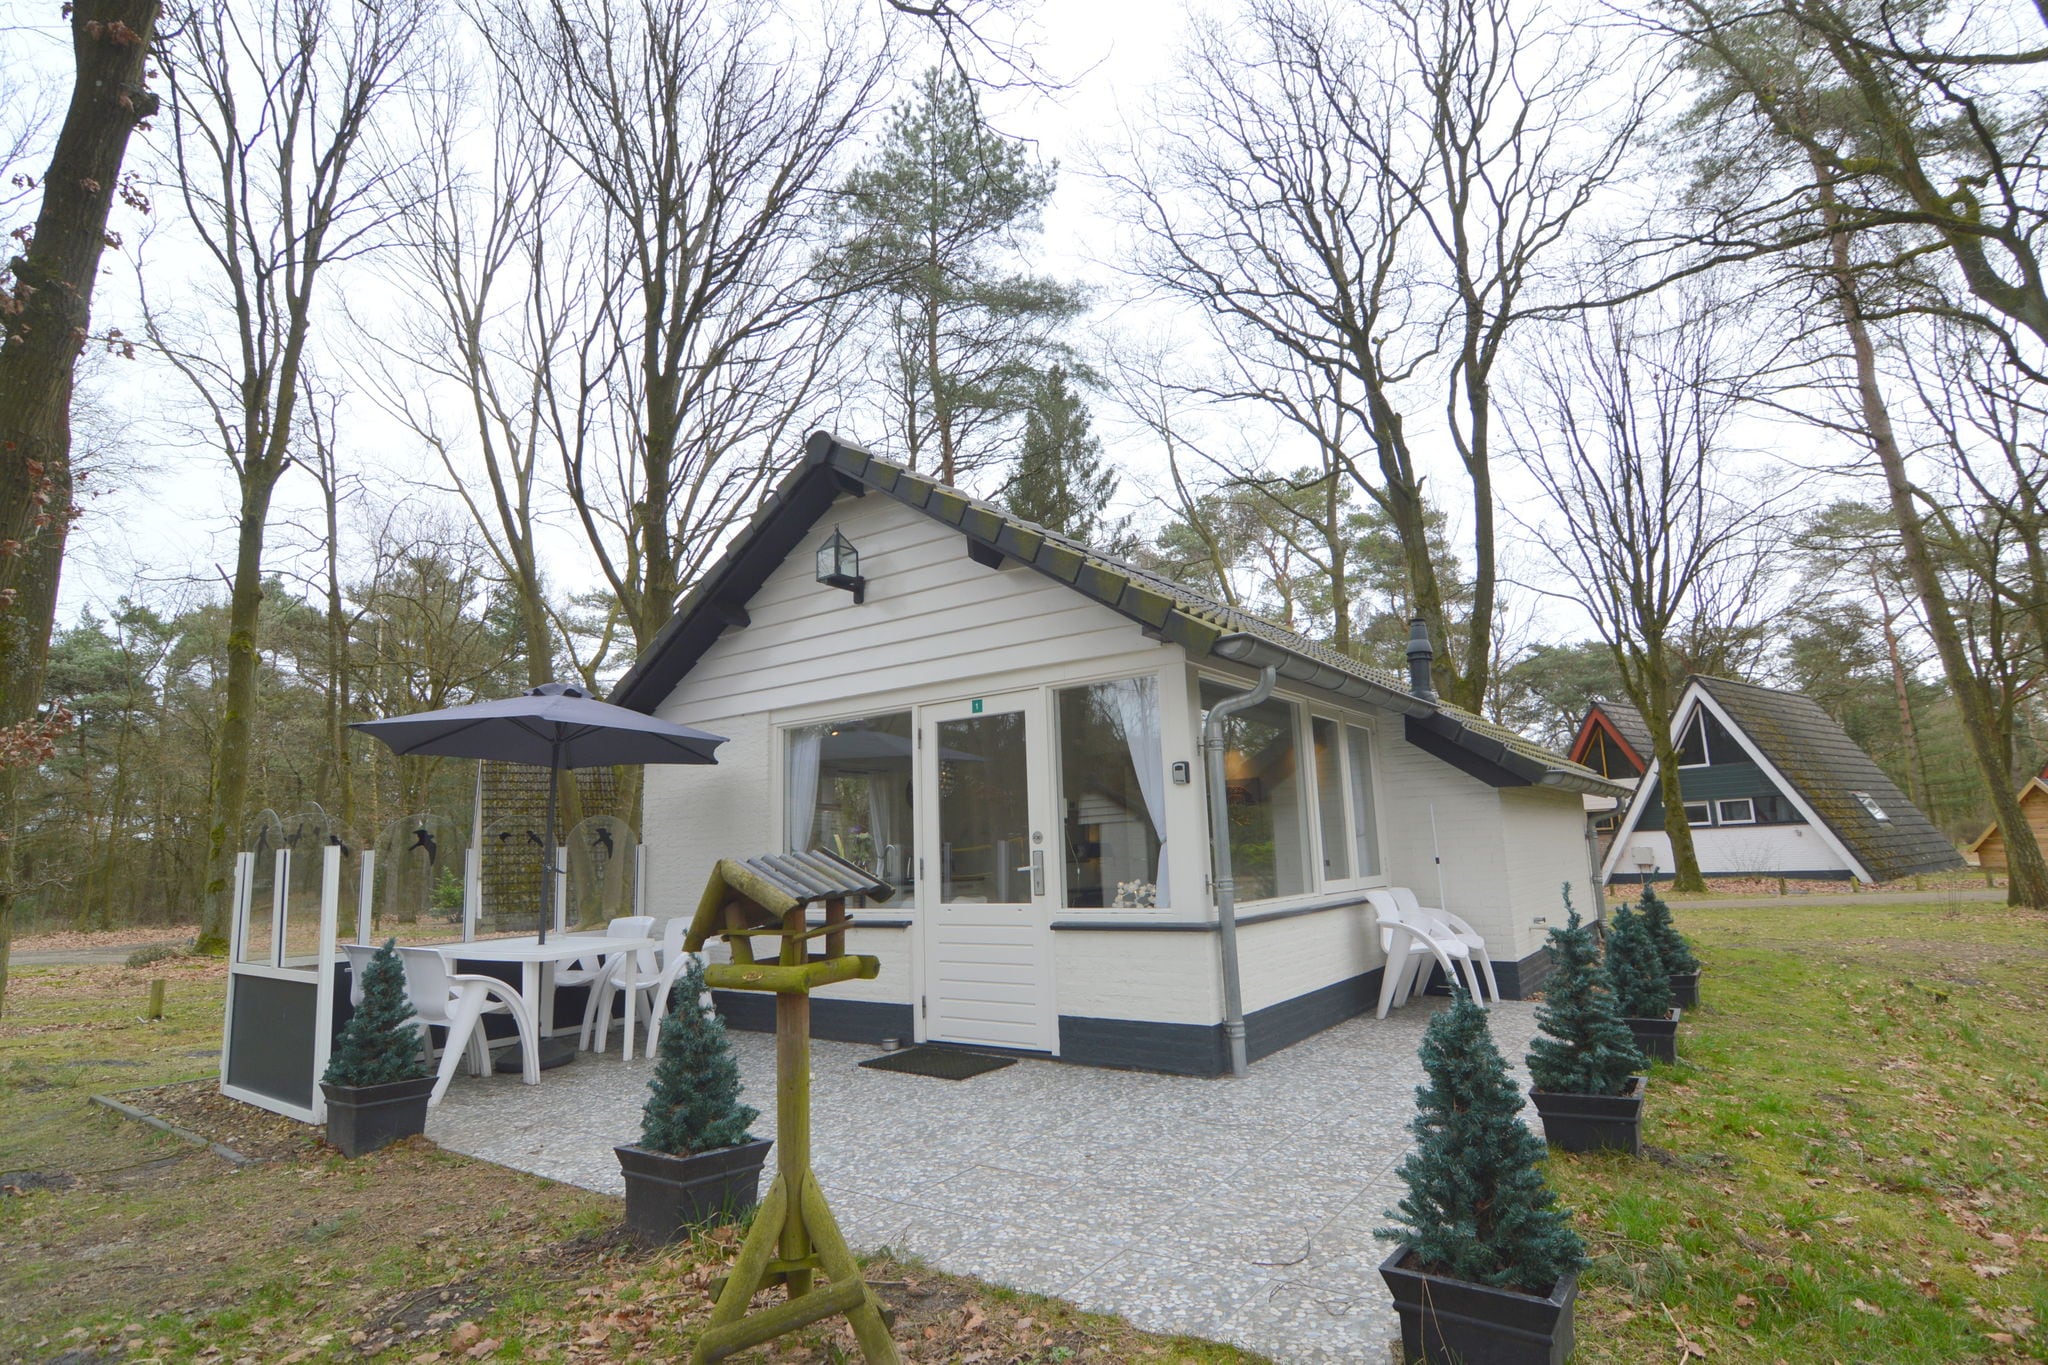 Maison de vacances dans le Limbourg dans une forêt